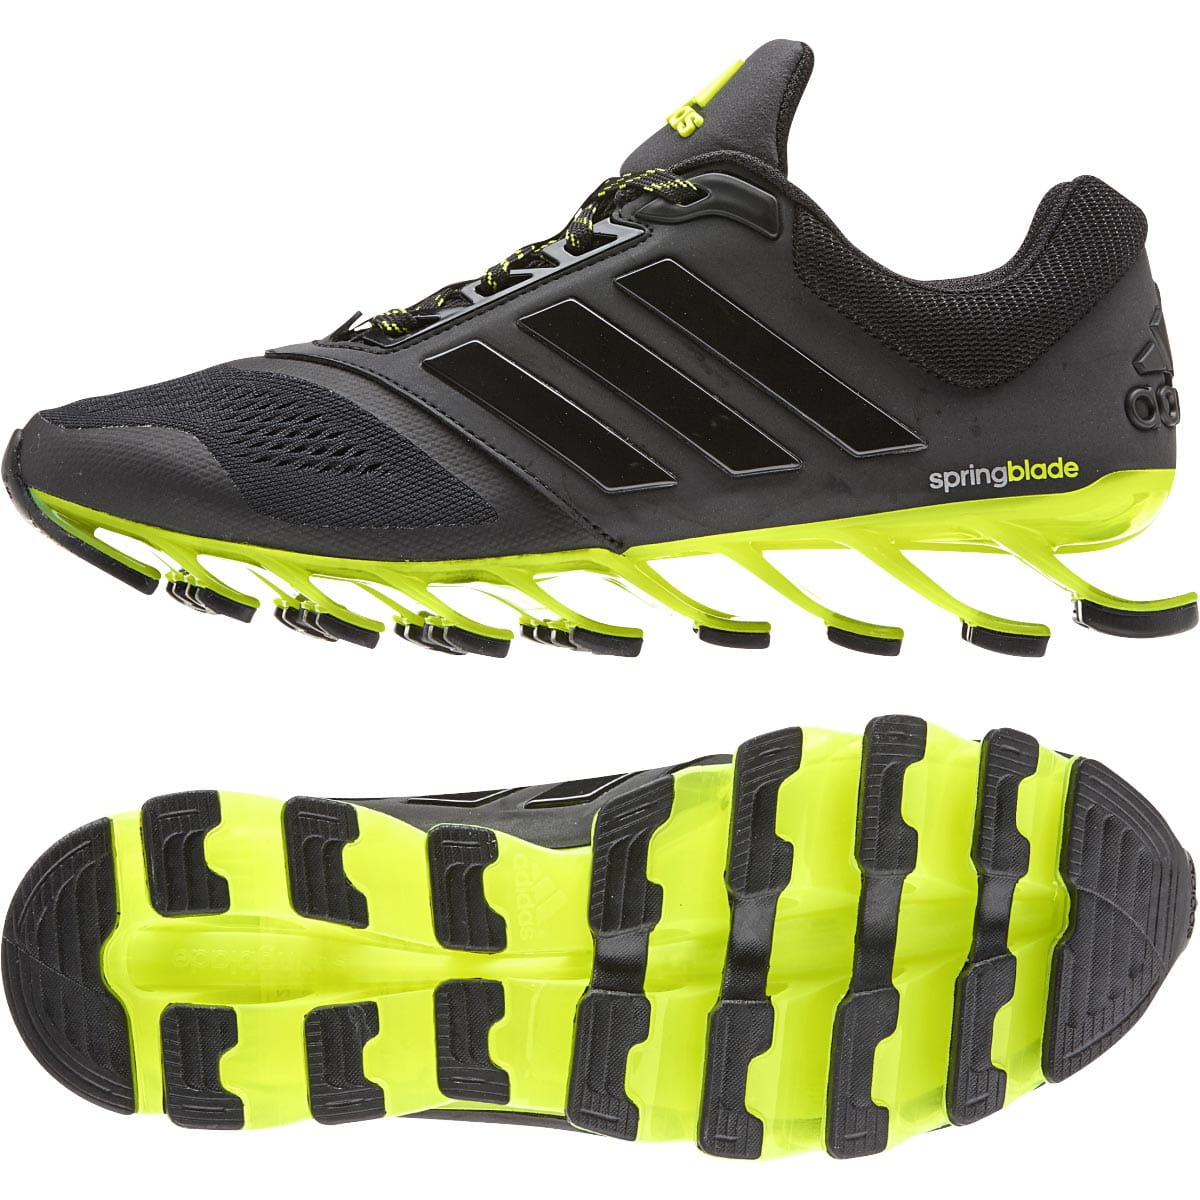 Dámské běžecké boty adidas springblade drive 2 w